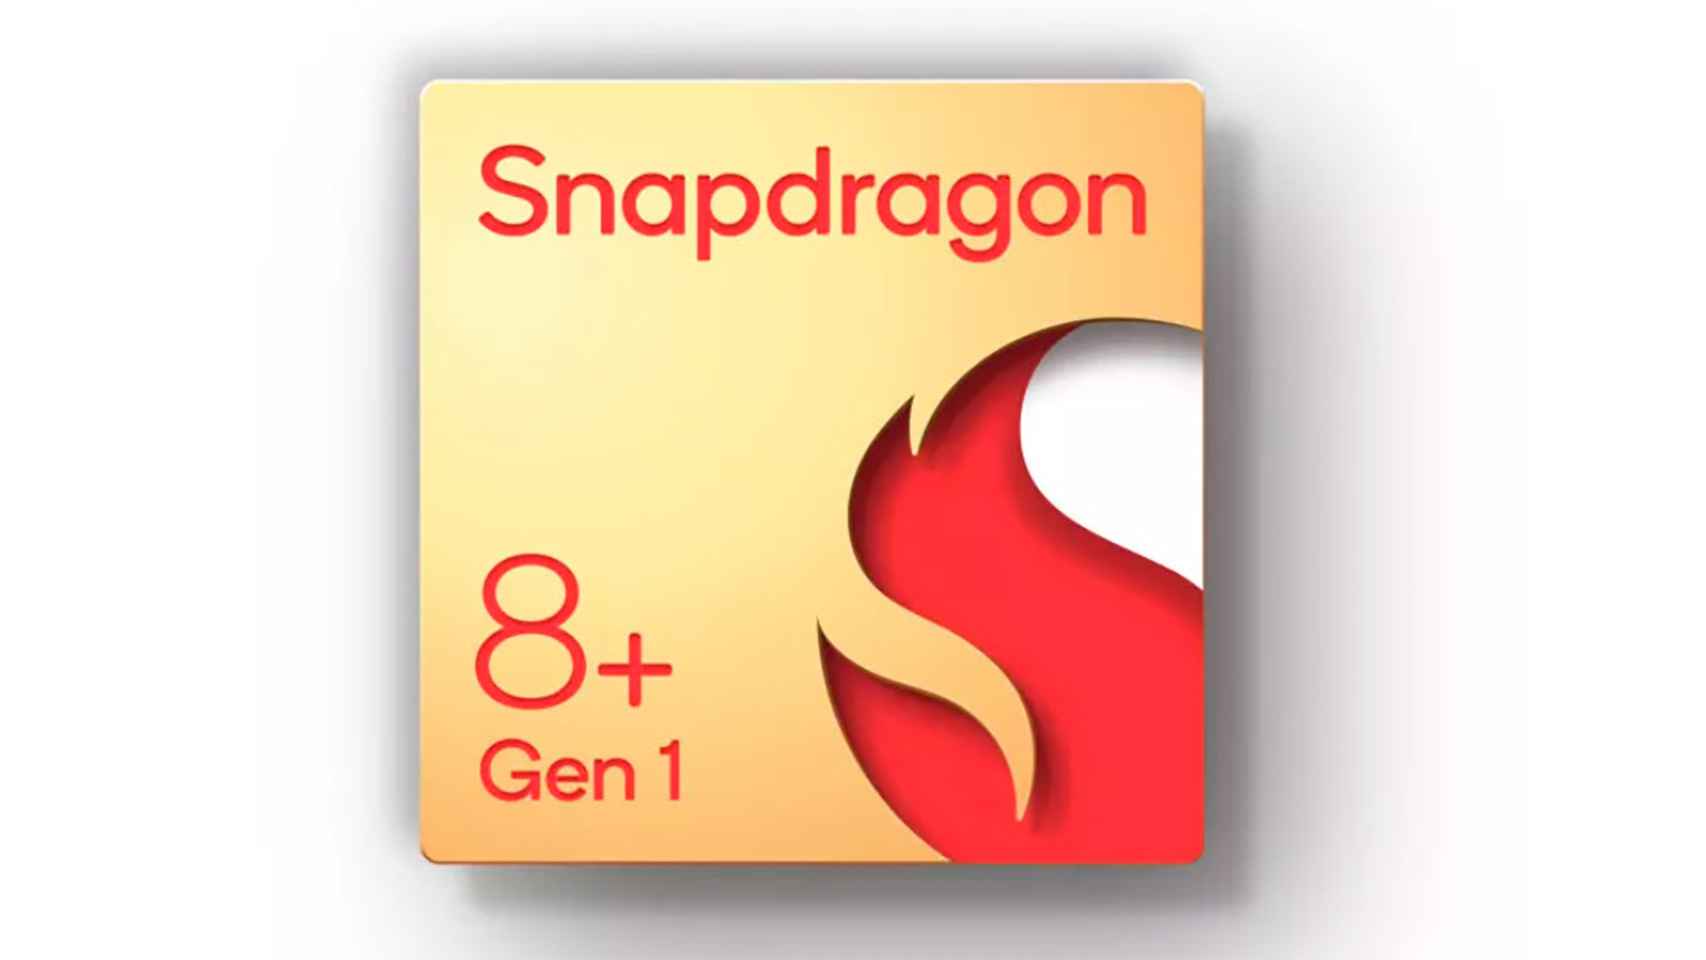 El Snapdragon 8 Plus Gen 1 y Snapdragon 7 Gen 1 son presentados